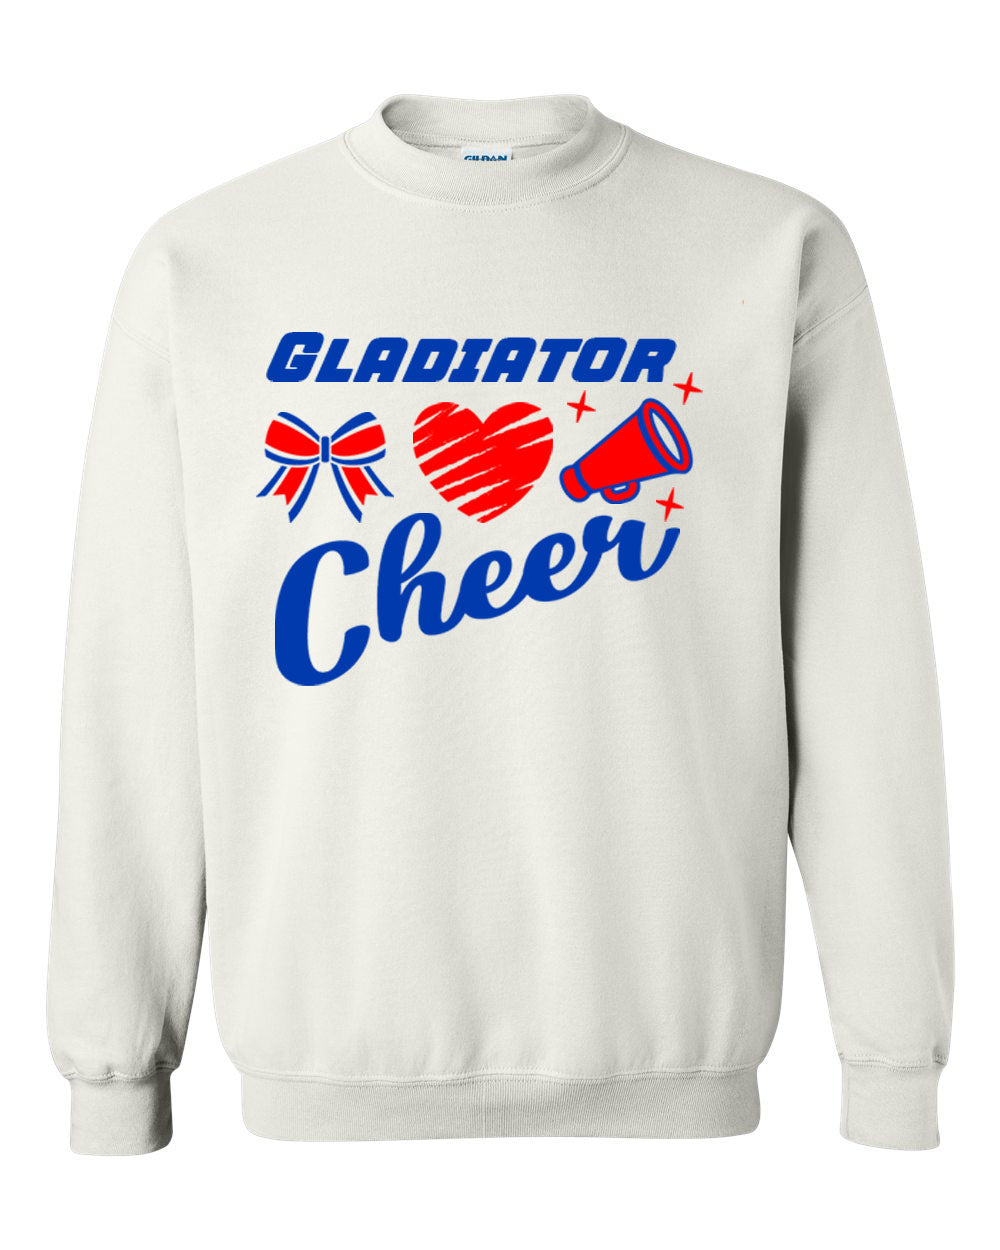 Goshen Cheer Design 9 non hooded sweatshirt